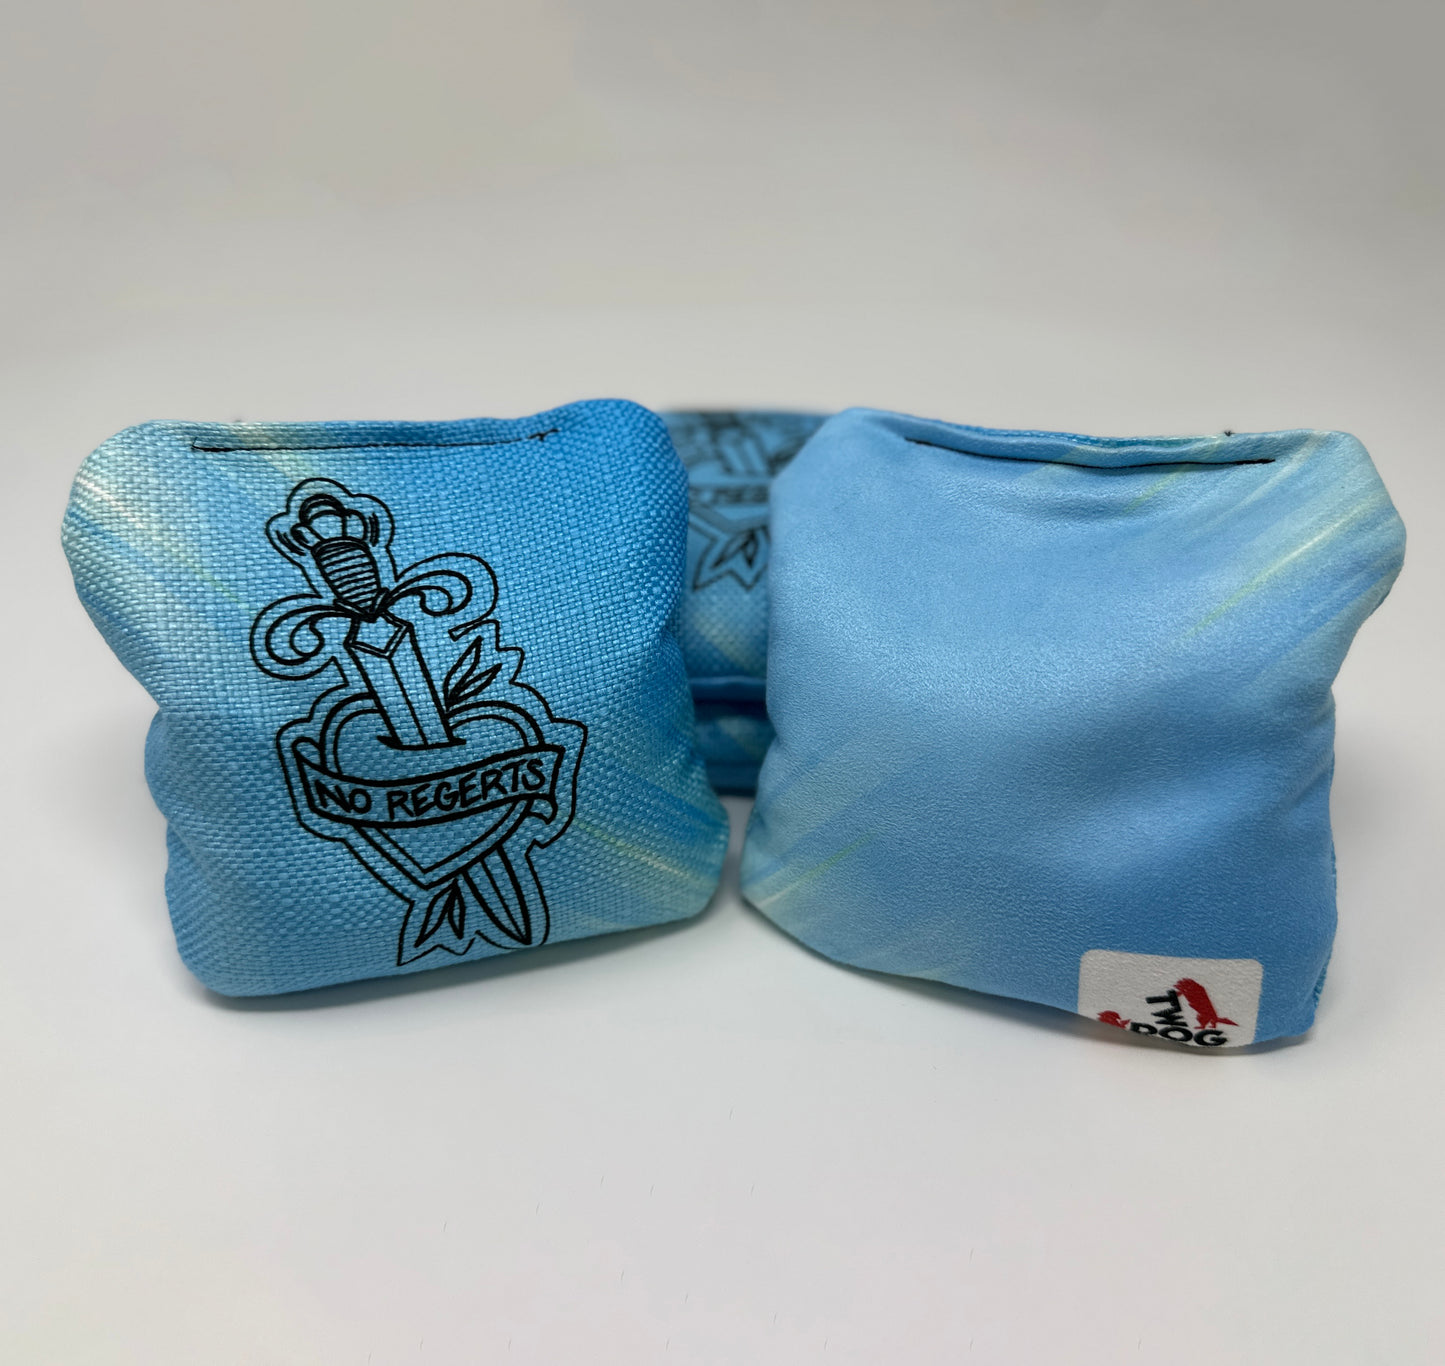 Custom Cornhole Bags